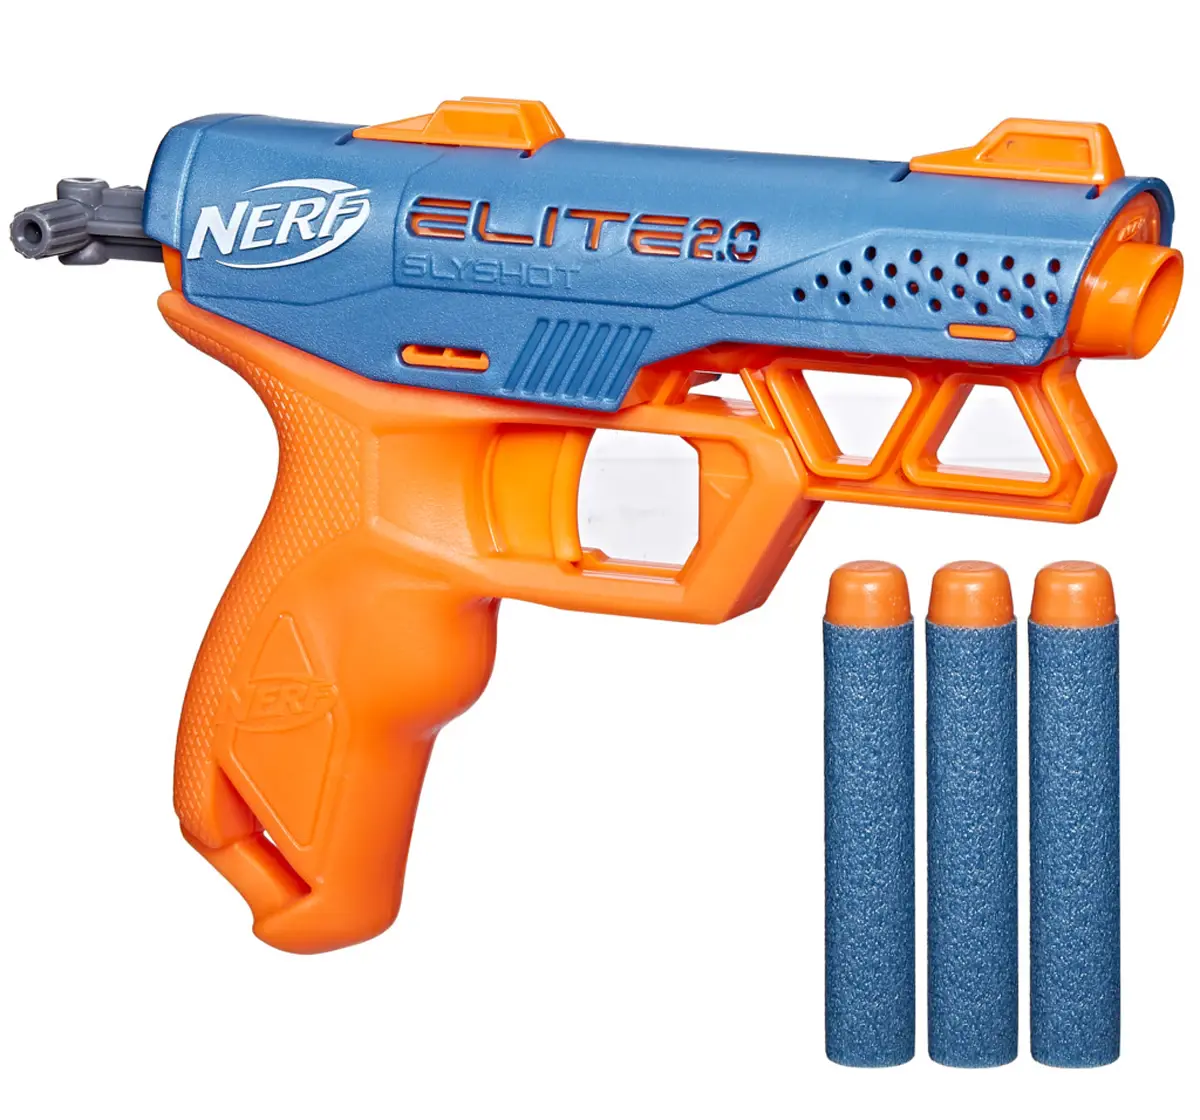 Nerf Elite 2.0 Slyshot Blaster, 2 Dart StorAge, 3 Nerf Elite Darts, Pull To Prime Handle, Toy Foam Blaster, 8Y+